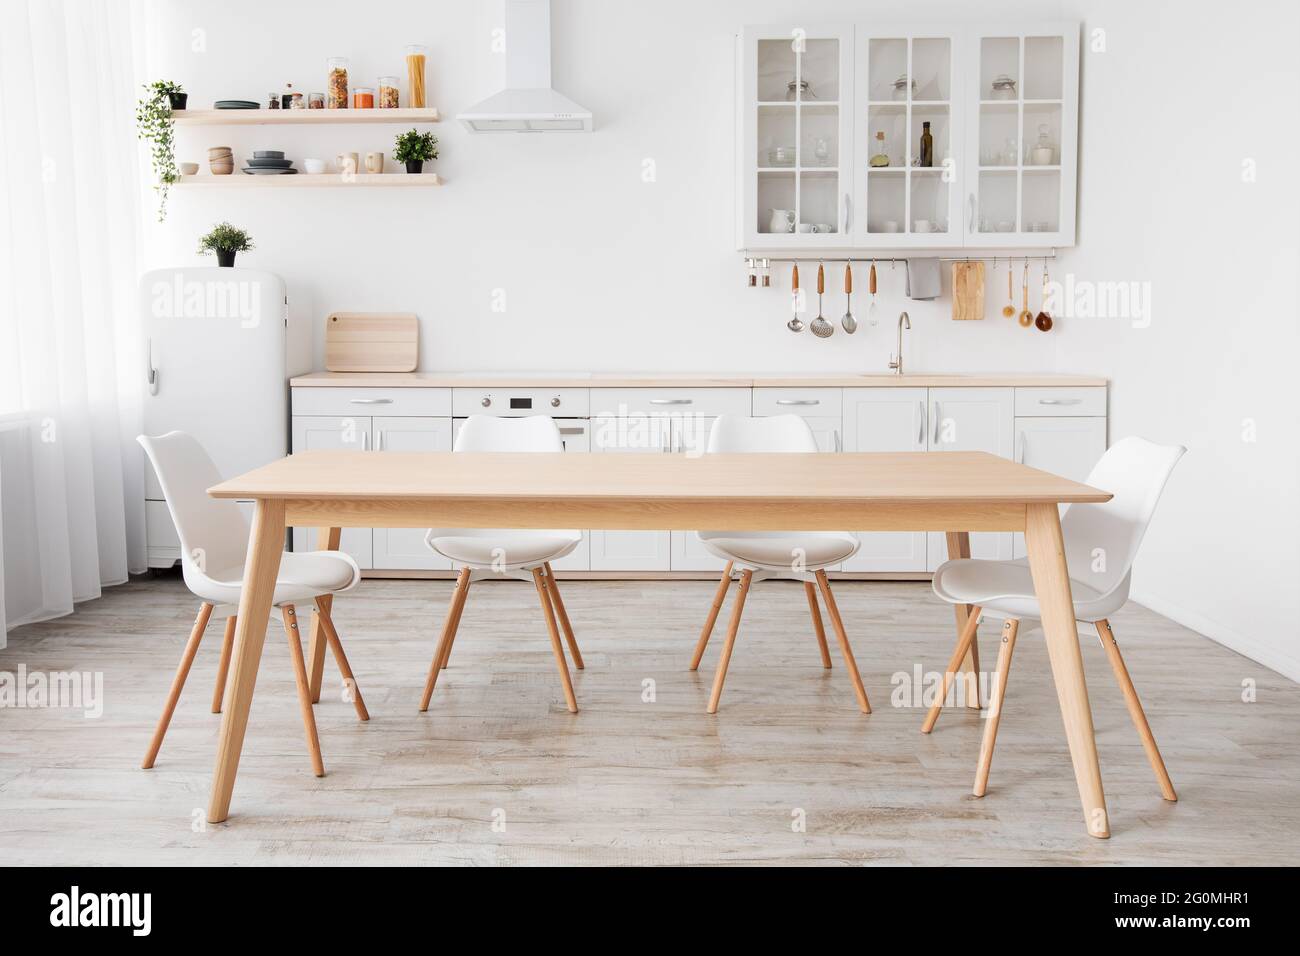 Luminosa cucina bianca con articoli per la casa. Interni moderni con cucina, tavolo e sedie in legno nella sala da pranzo Foto Stock